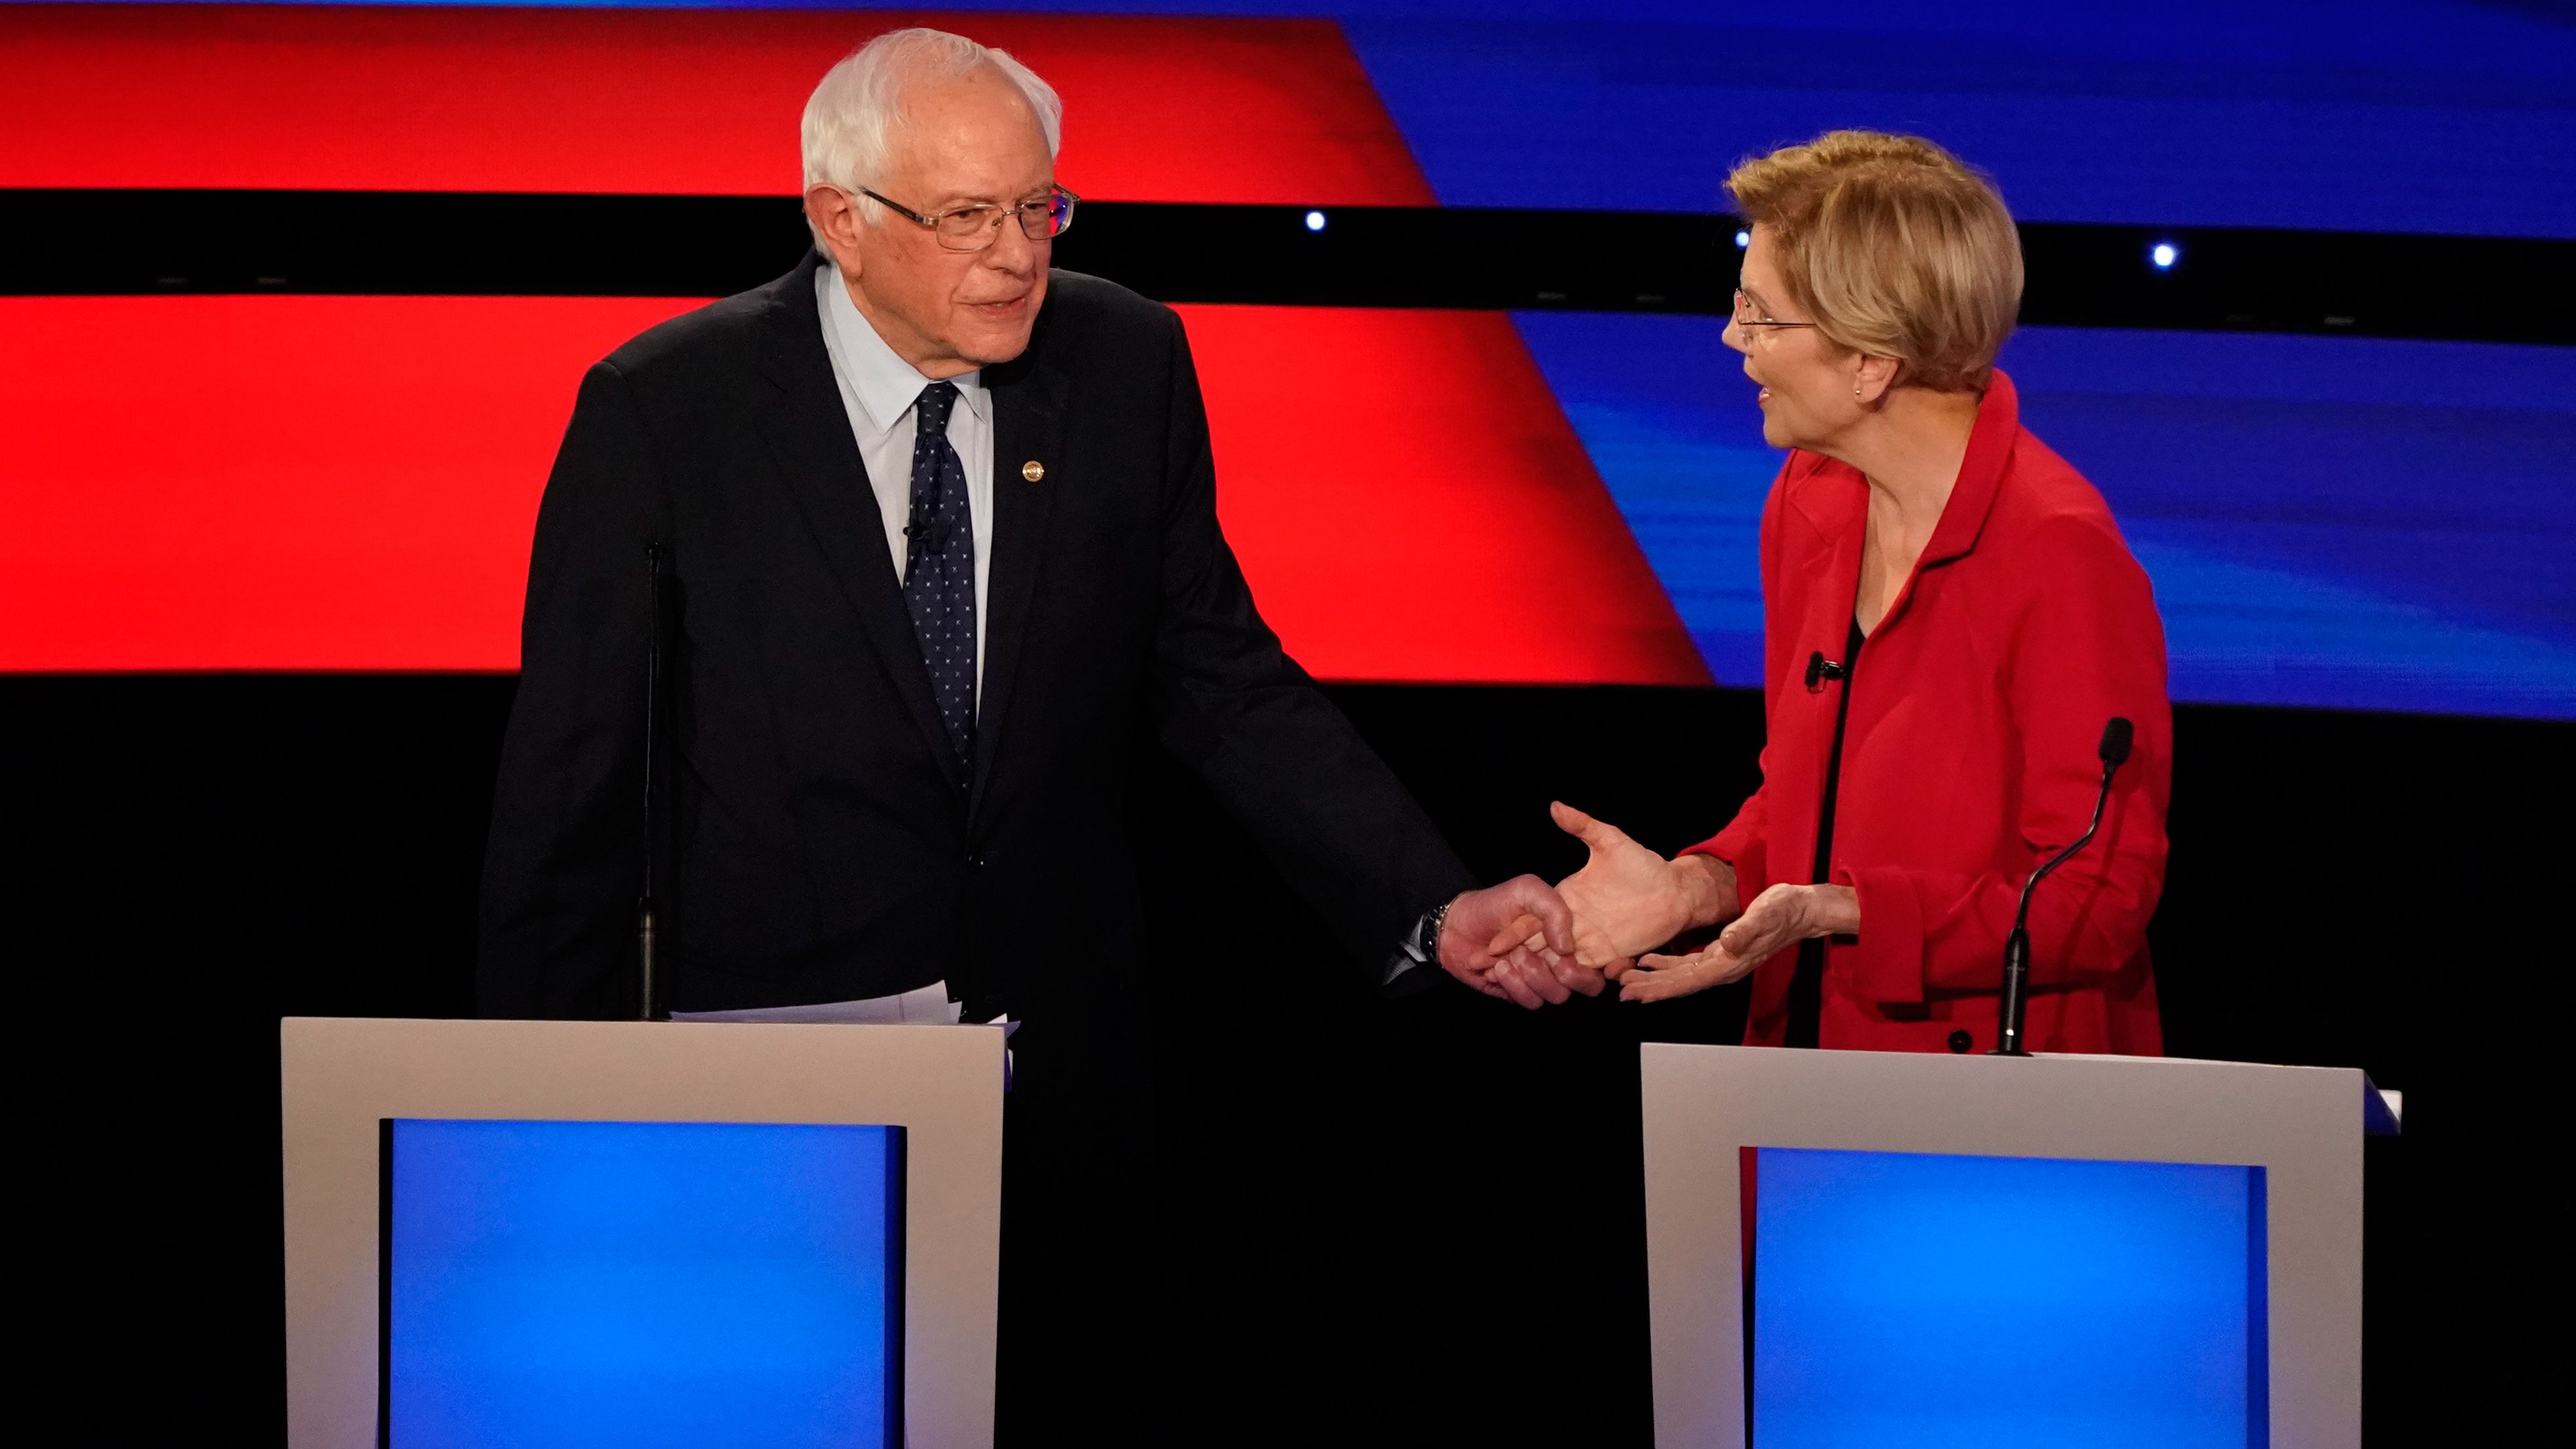 Sanders grabs the hand of US Sen. Elizabeth Warren during the Democratic debates in Detroit in July 2019.